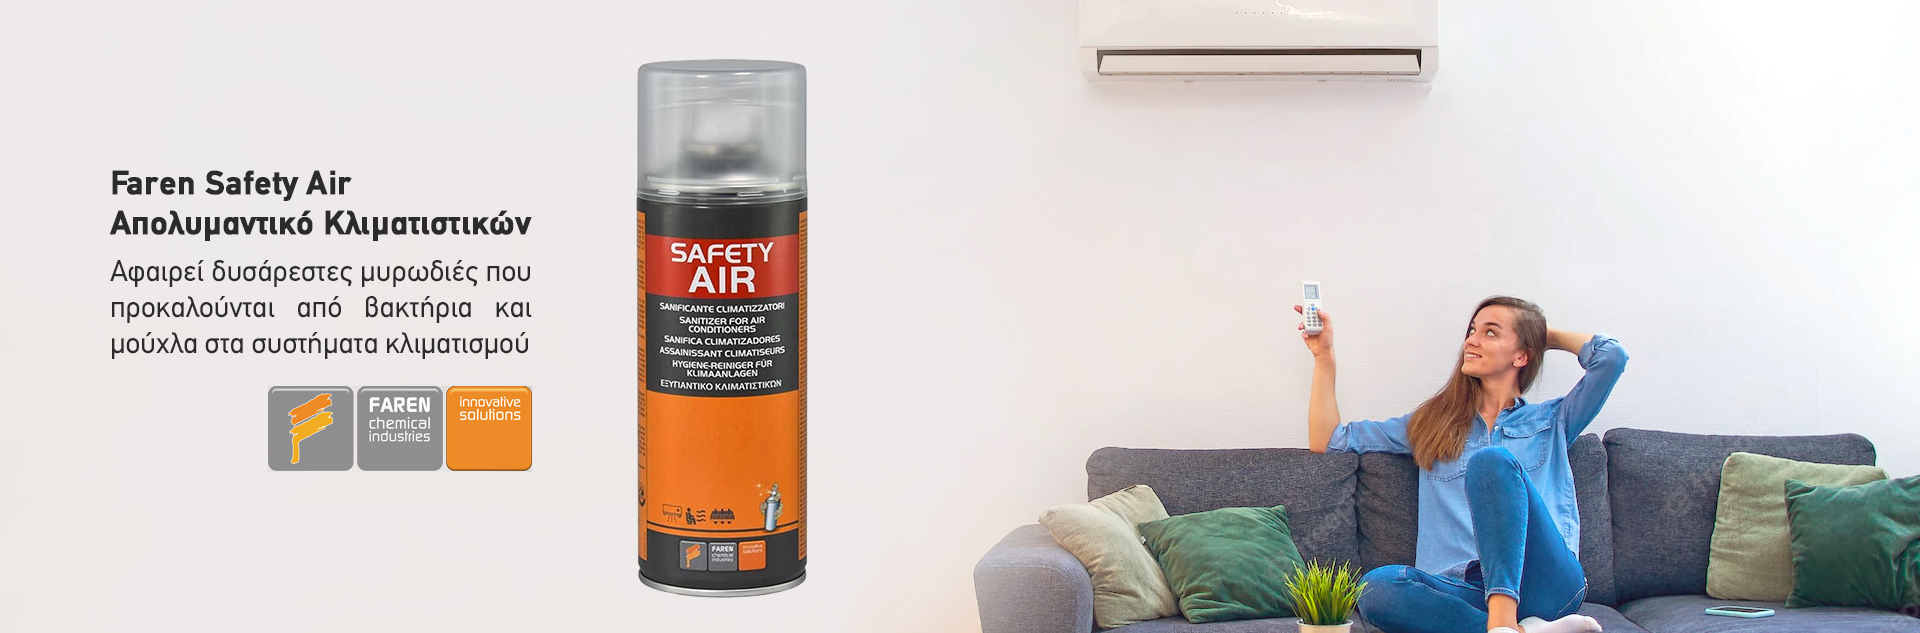 Faren Safety Air Σπρέι καθαριστικό απολυμαντικό κλιματιστικών που αφαιρεί δυσάρεστες μυρωδιές που προκαλούνται από βακτήρια και μούχλα στα συστήματα κλιματισμού